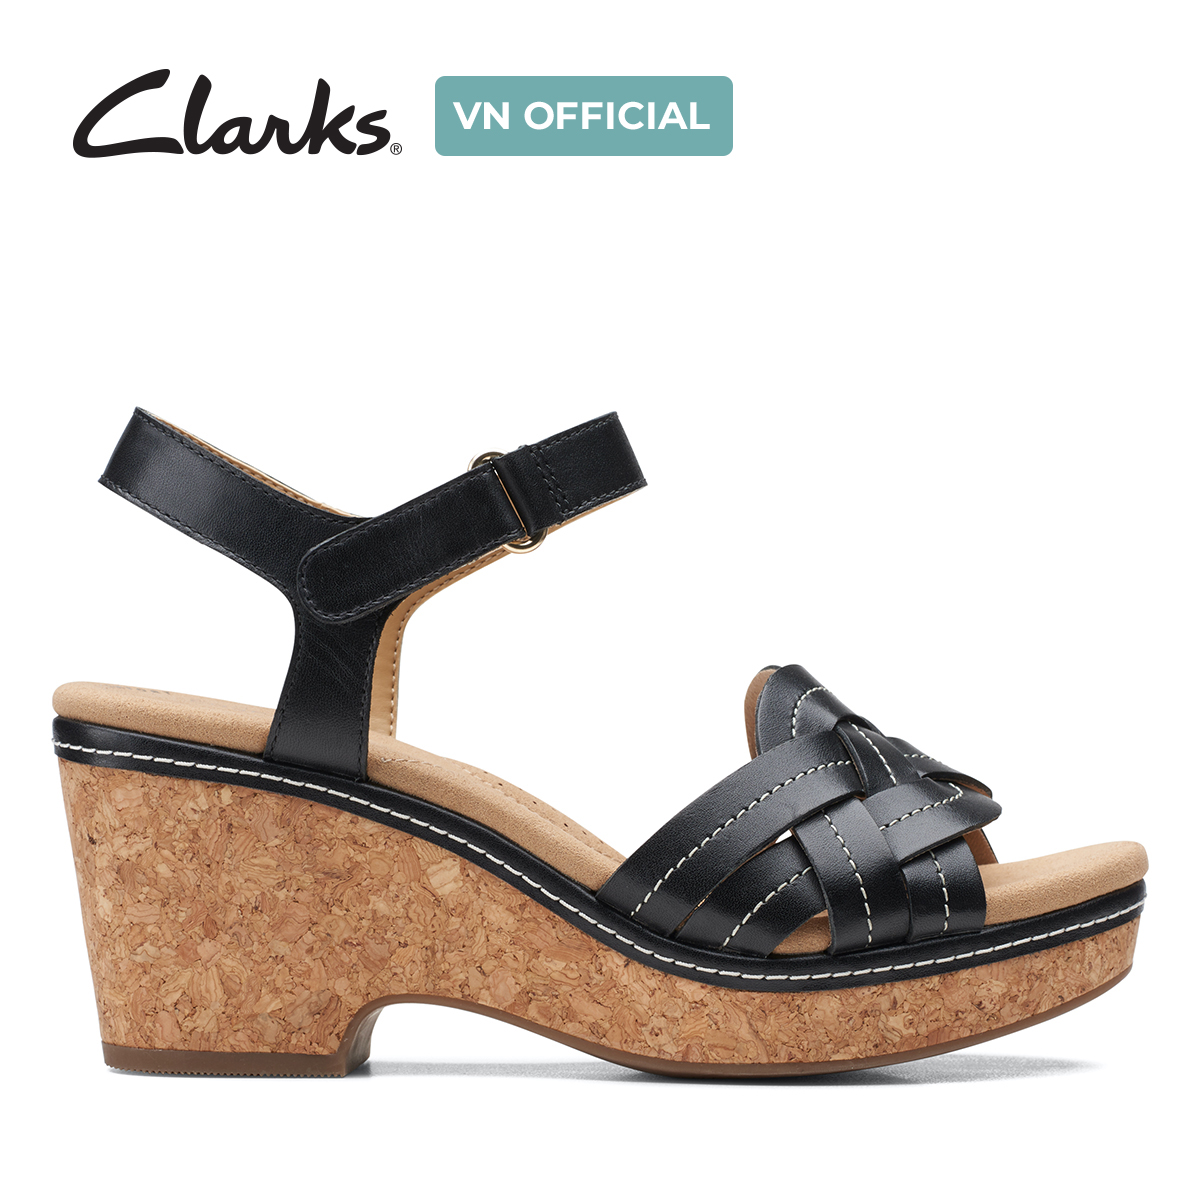 Giày Sandal Đế Xuồng Da Nữ Clarks - Giselle Coast